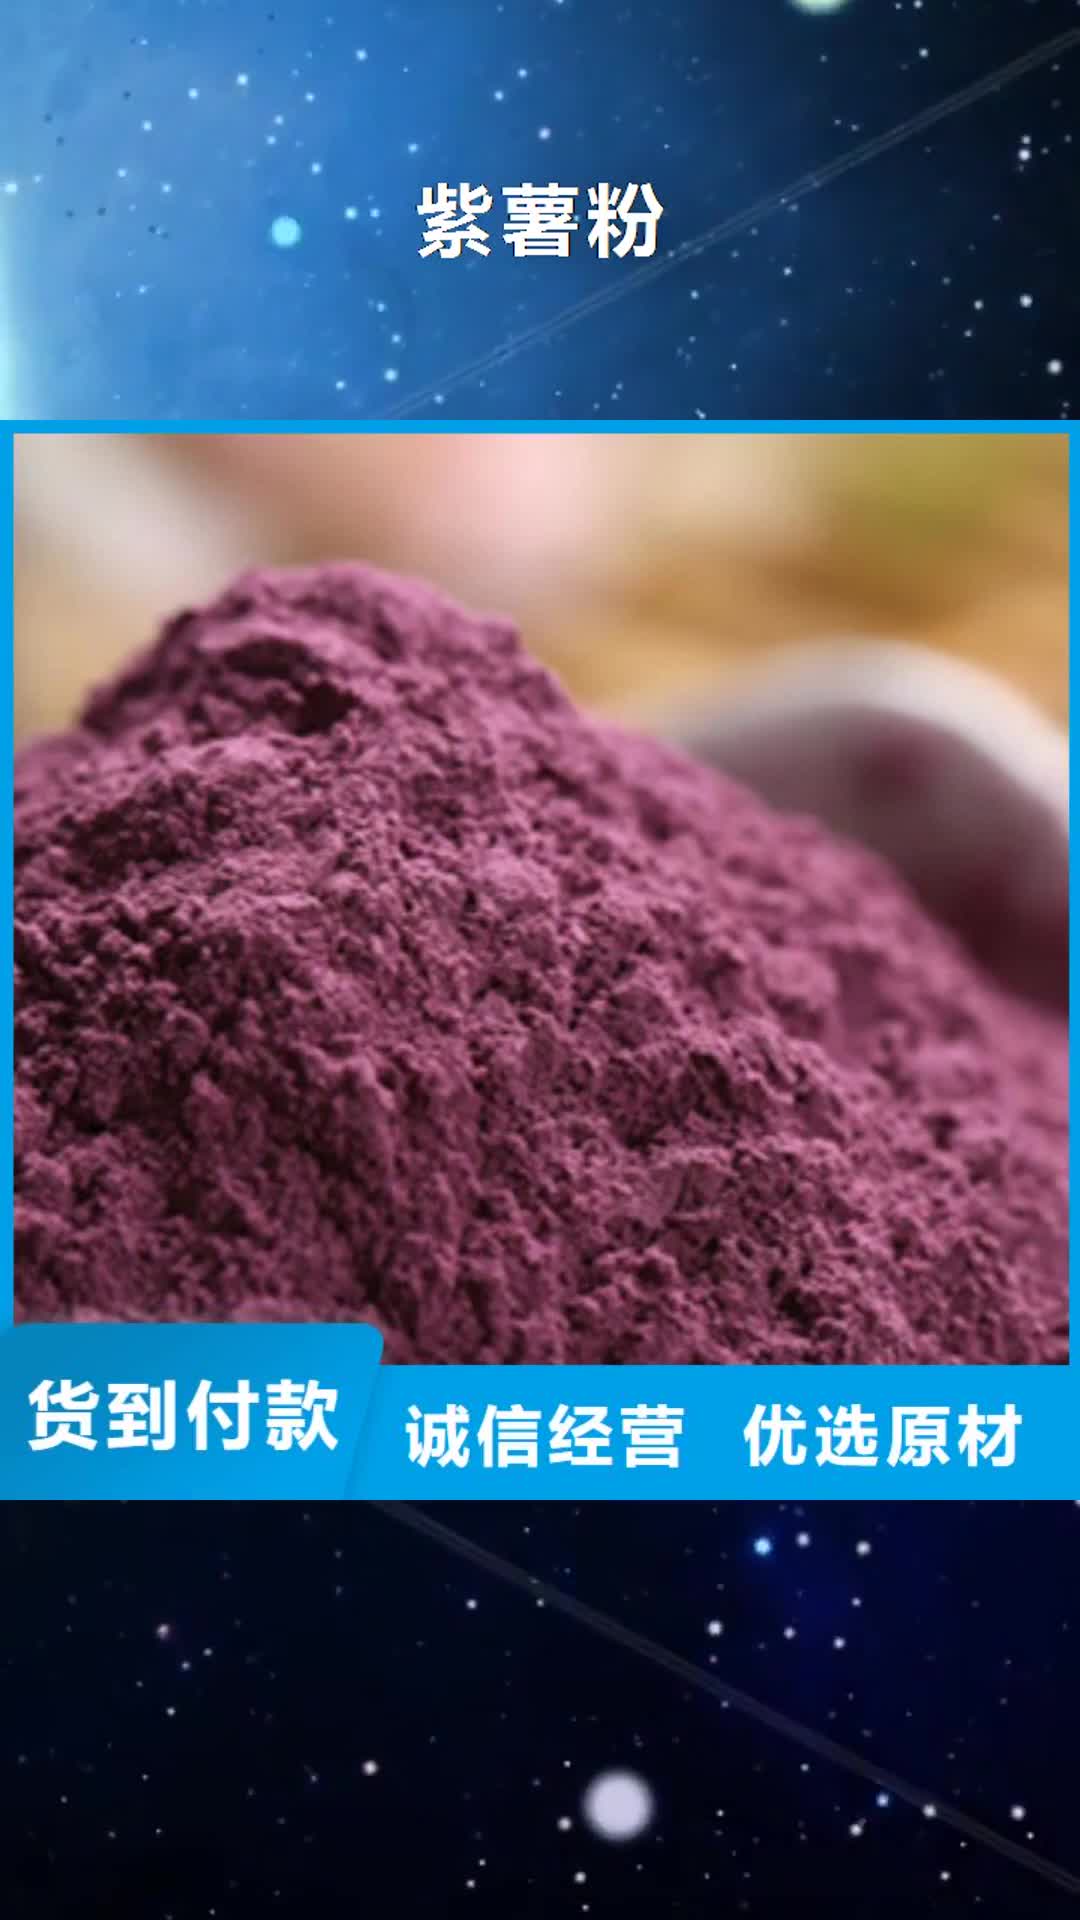 保山紫薯粉超产品在细节